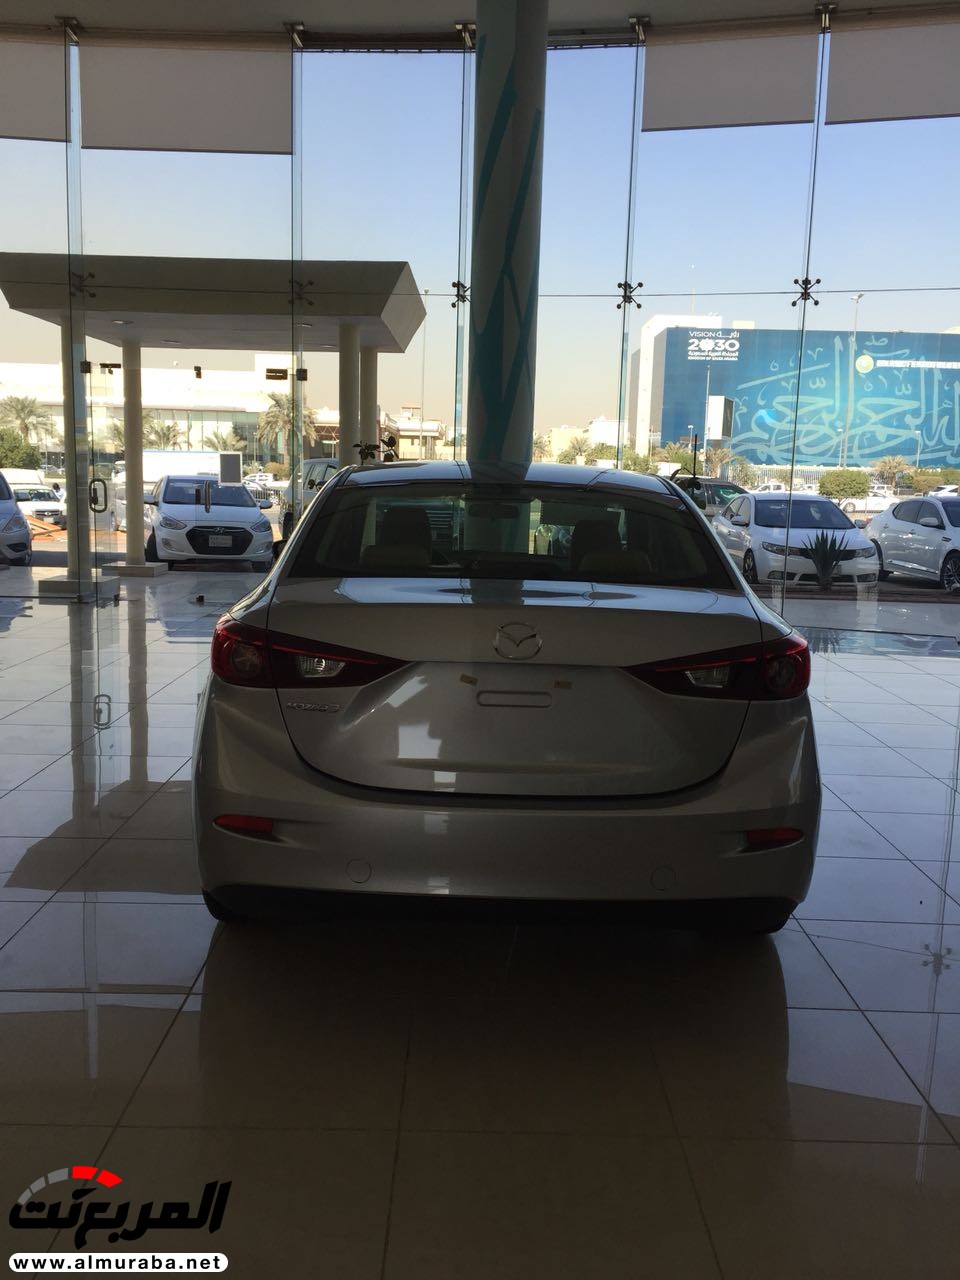 مازدا 3 2018 في السعودية لدى الحاج حسين علي رضا + الاسعار والمواصفات لجميع الفئات Mazda 3 2